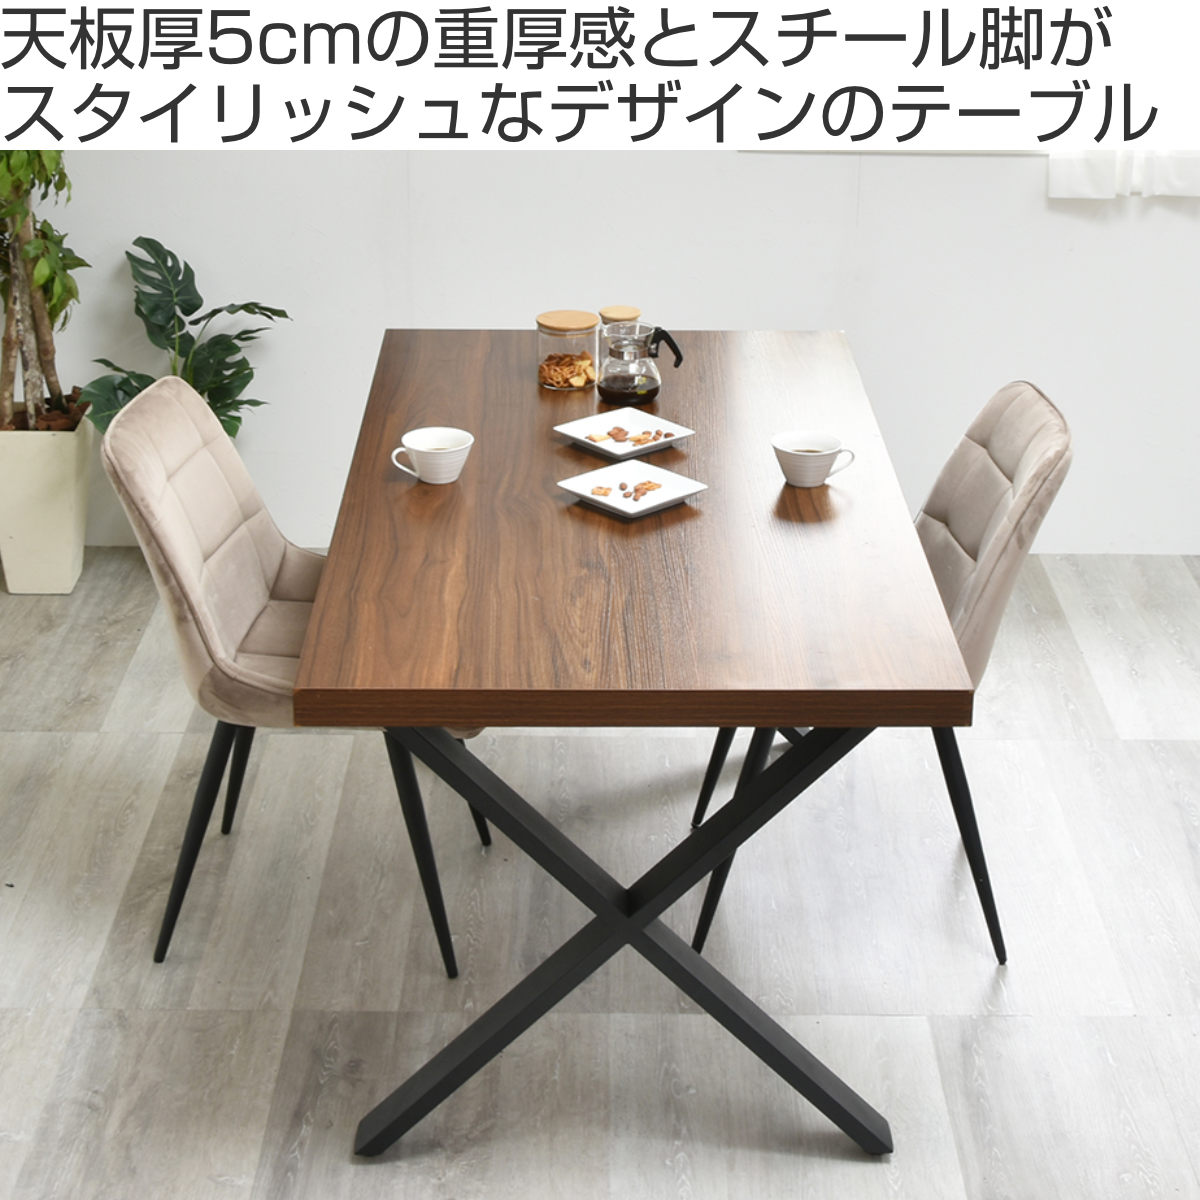 【北欧家具★4〜5人用ダイニングテーブルセット】①テーブルのみ送料いくらくらいになりますか